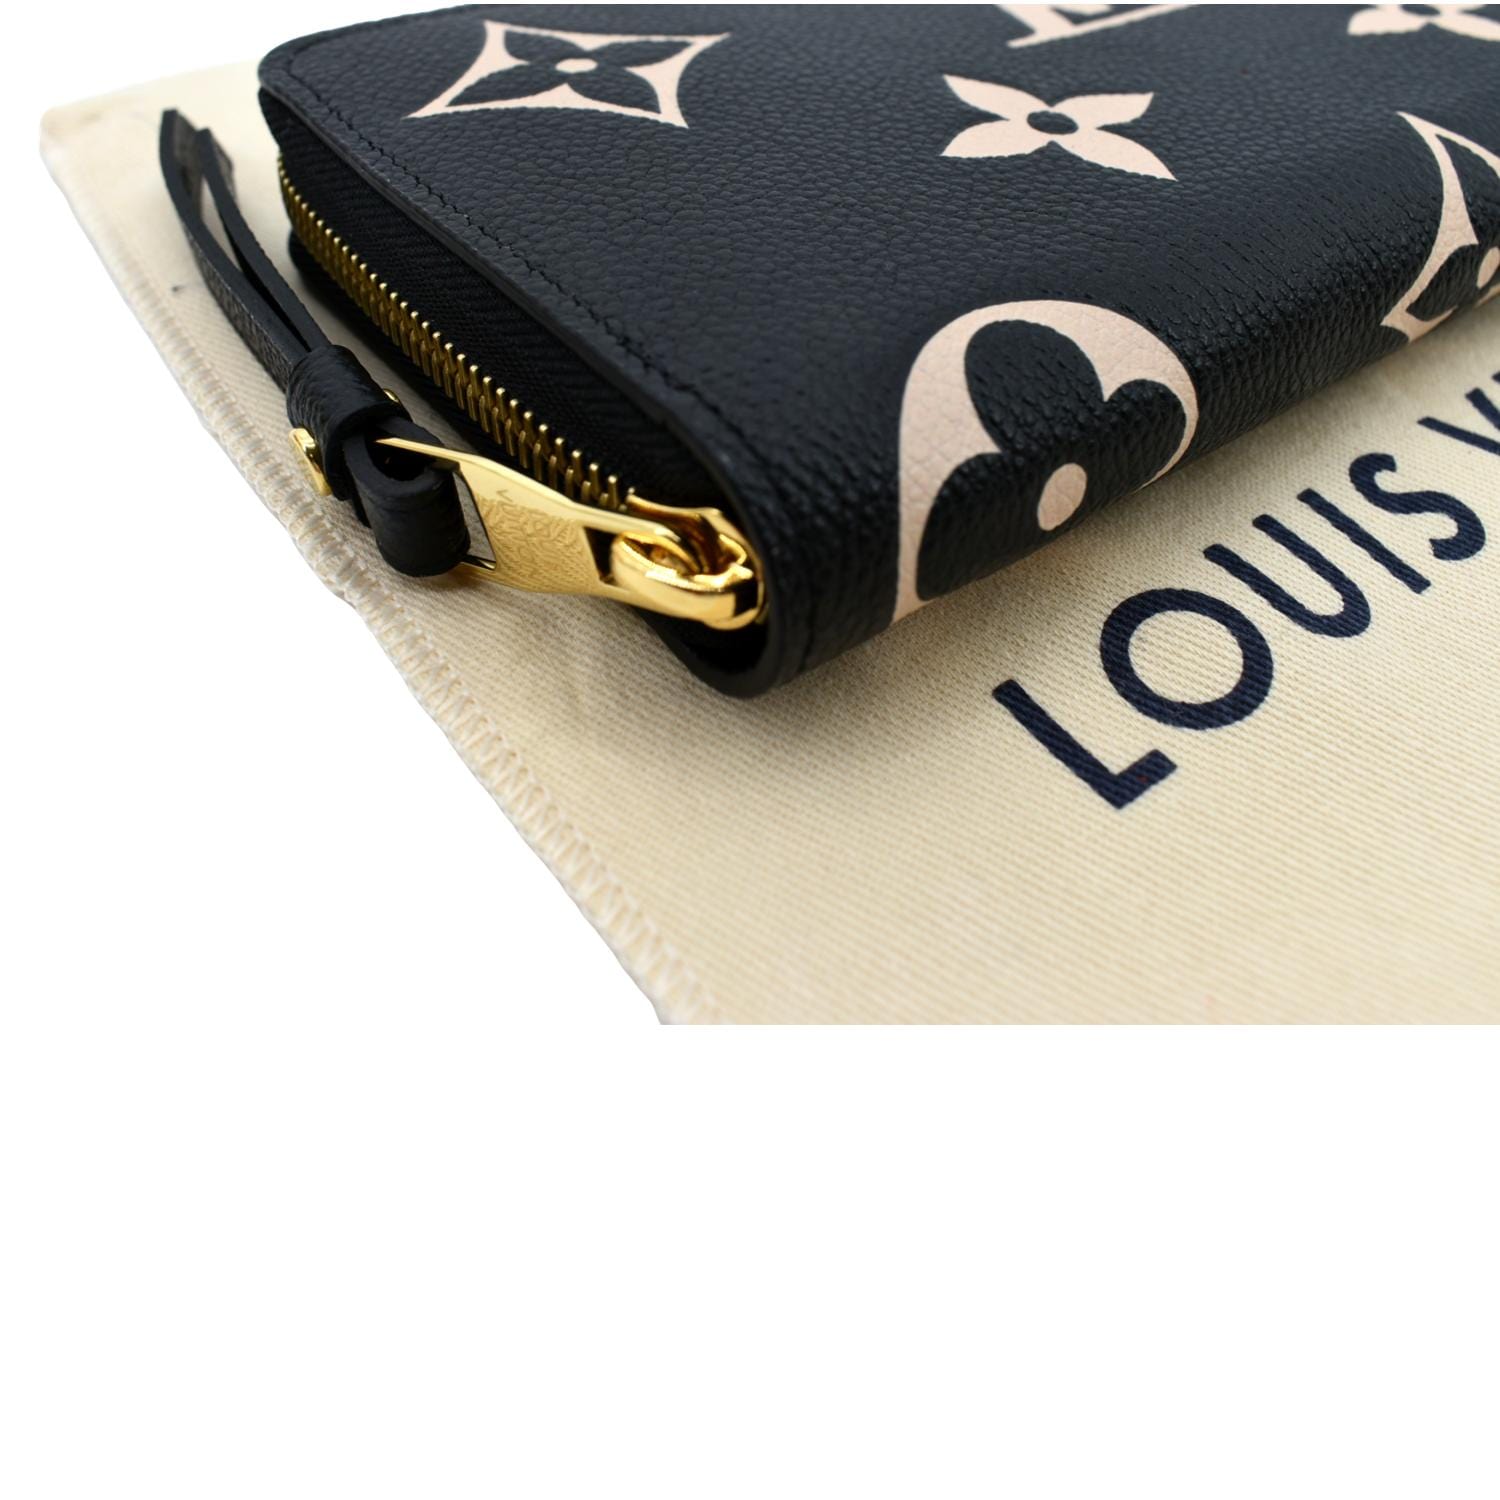 Authentic Louis Vuitton wallet  Louis vuitton wallet, Louis vuitton,  Vuitton